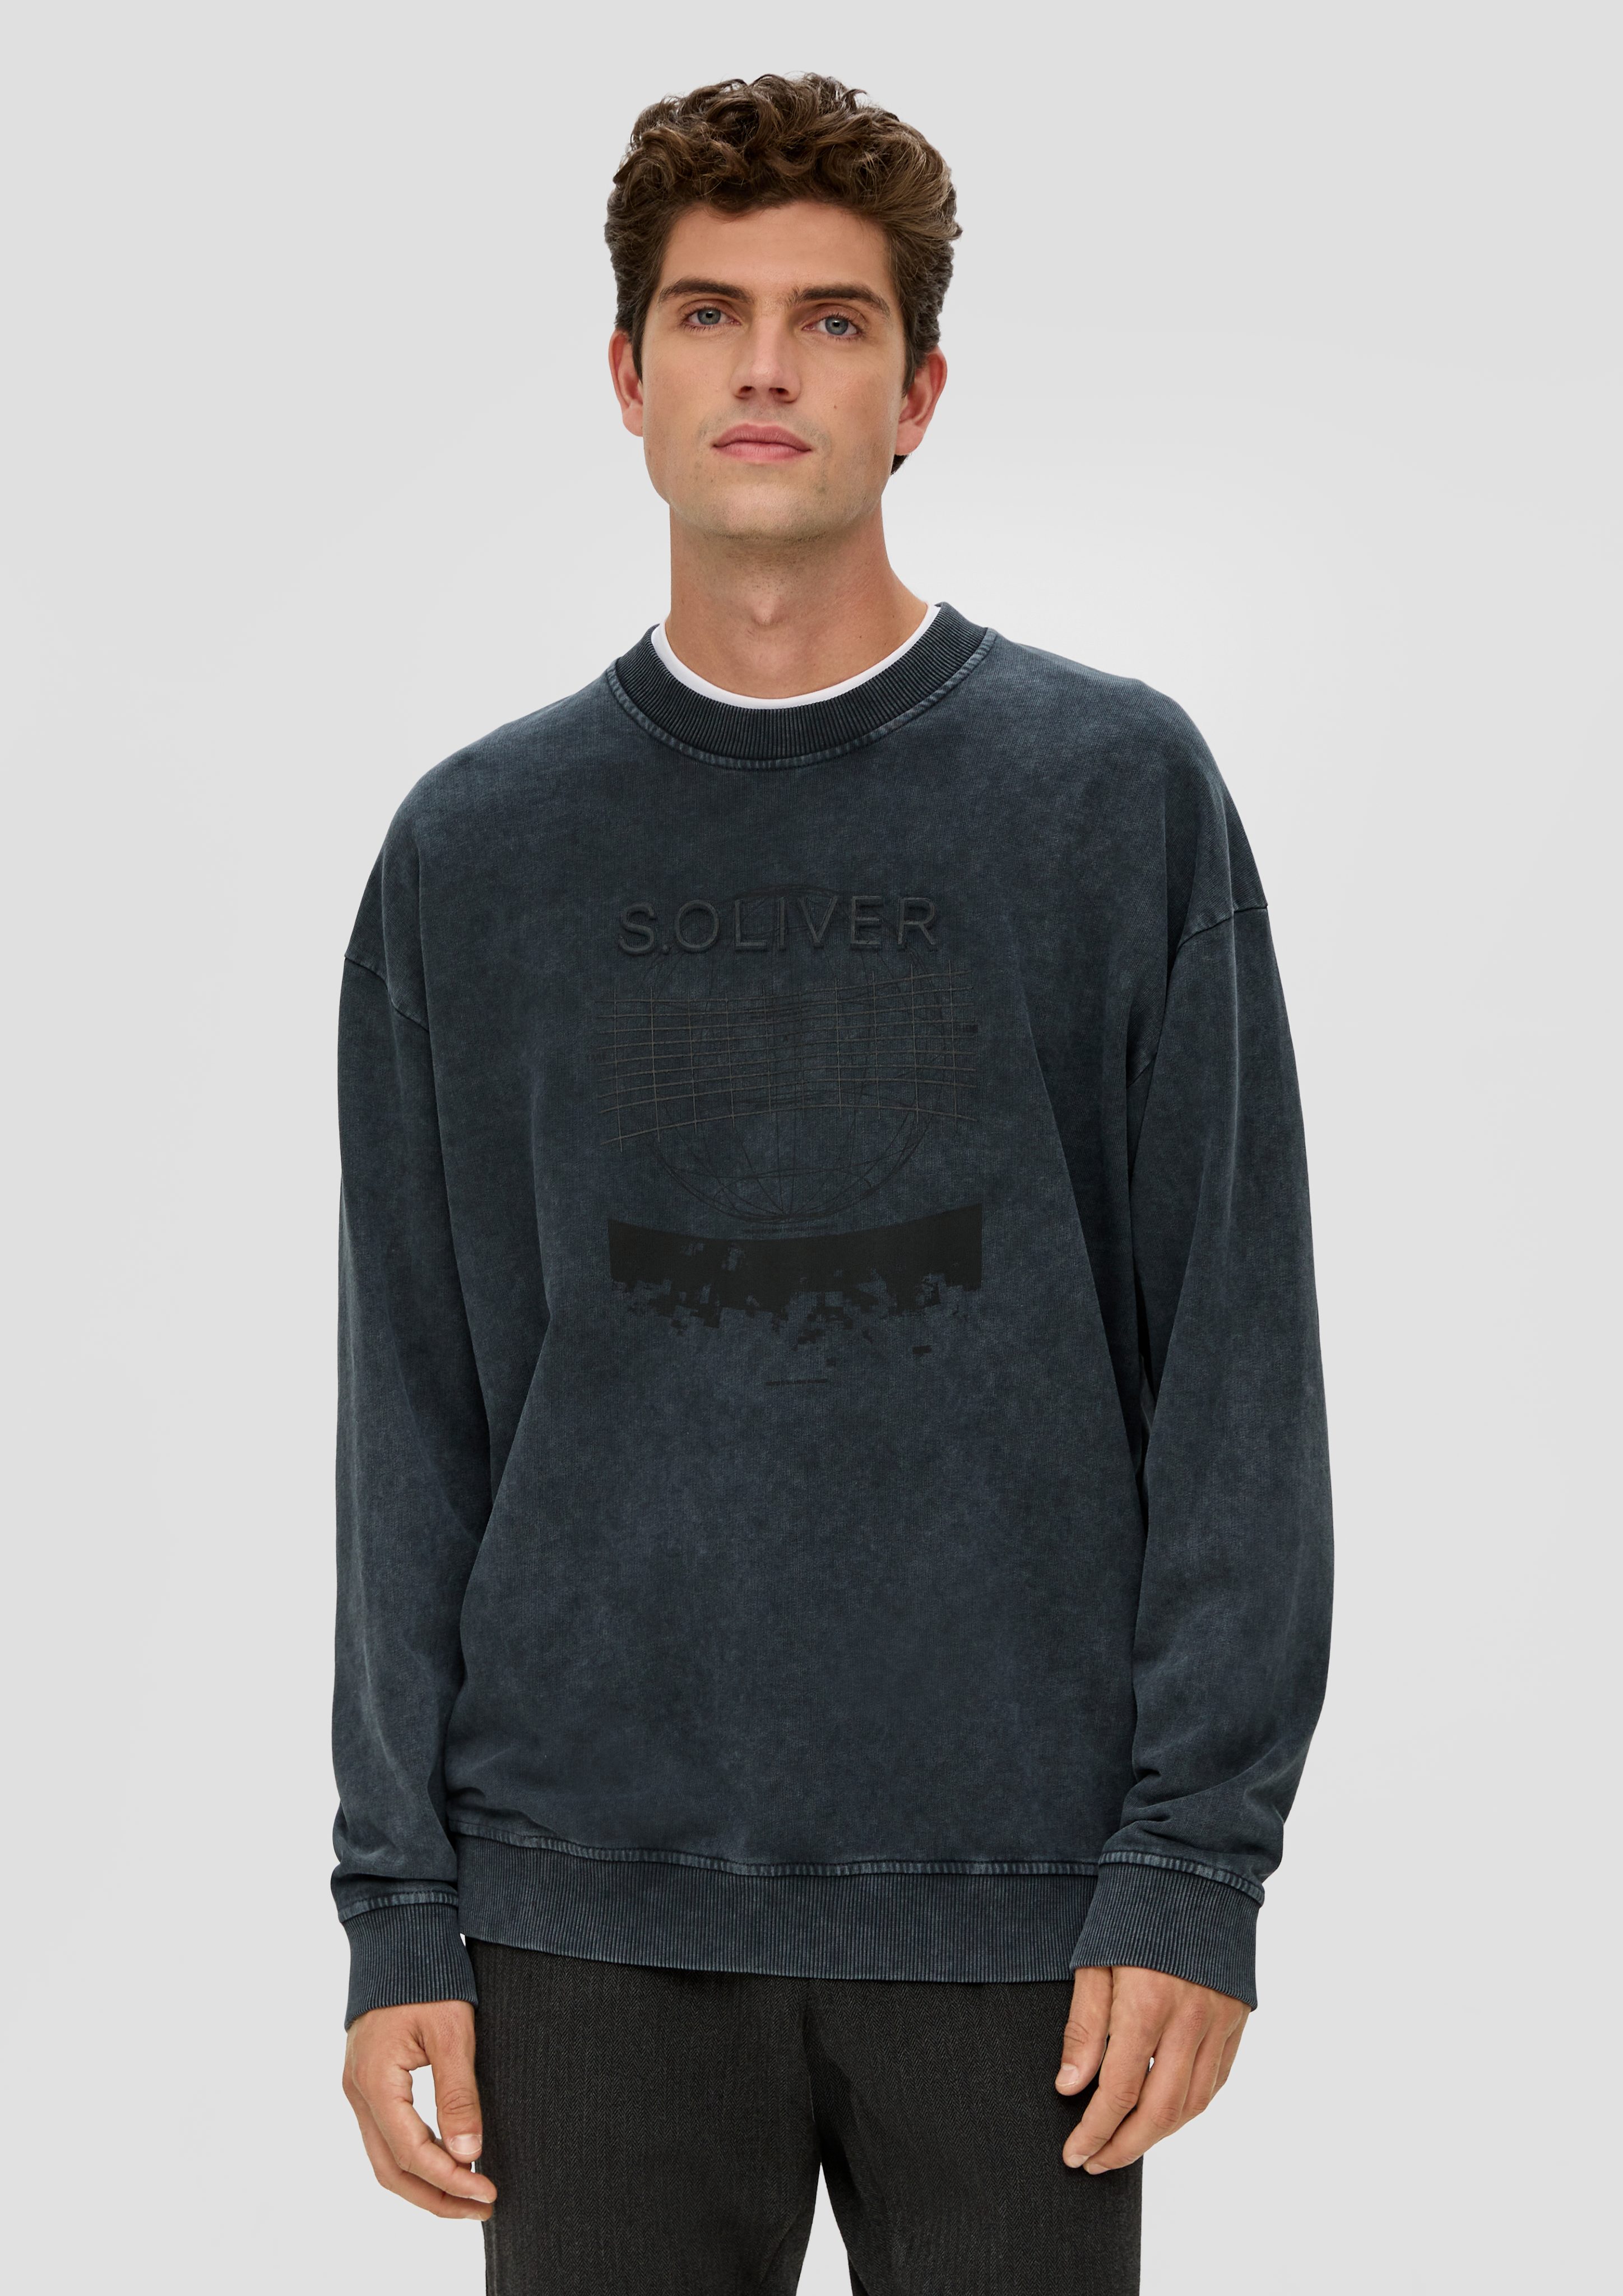 Sweatshirt anthrazit Dye Garment Gewaschenes mit s.Oliver Grafik-Print Sweatshirt